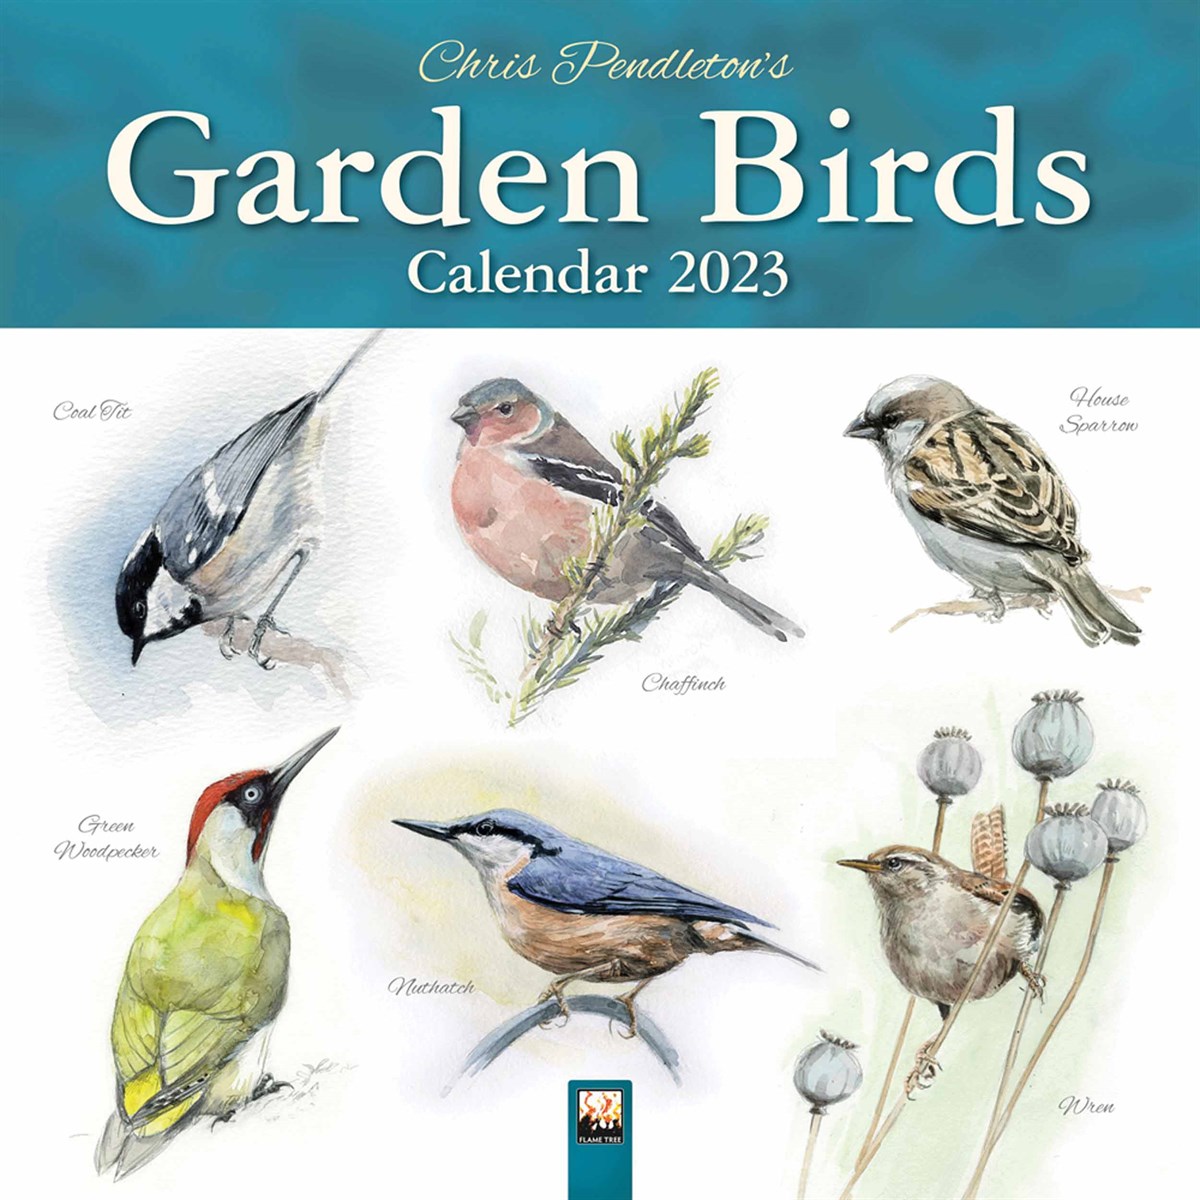 Chris Pendleton’s Garden Birds 2023 Calendars